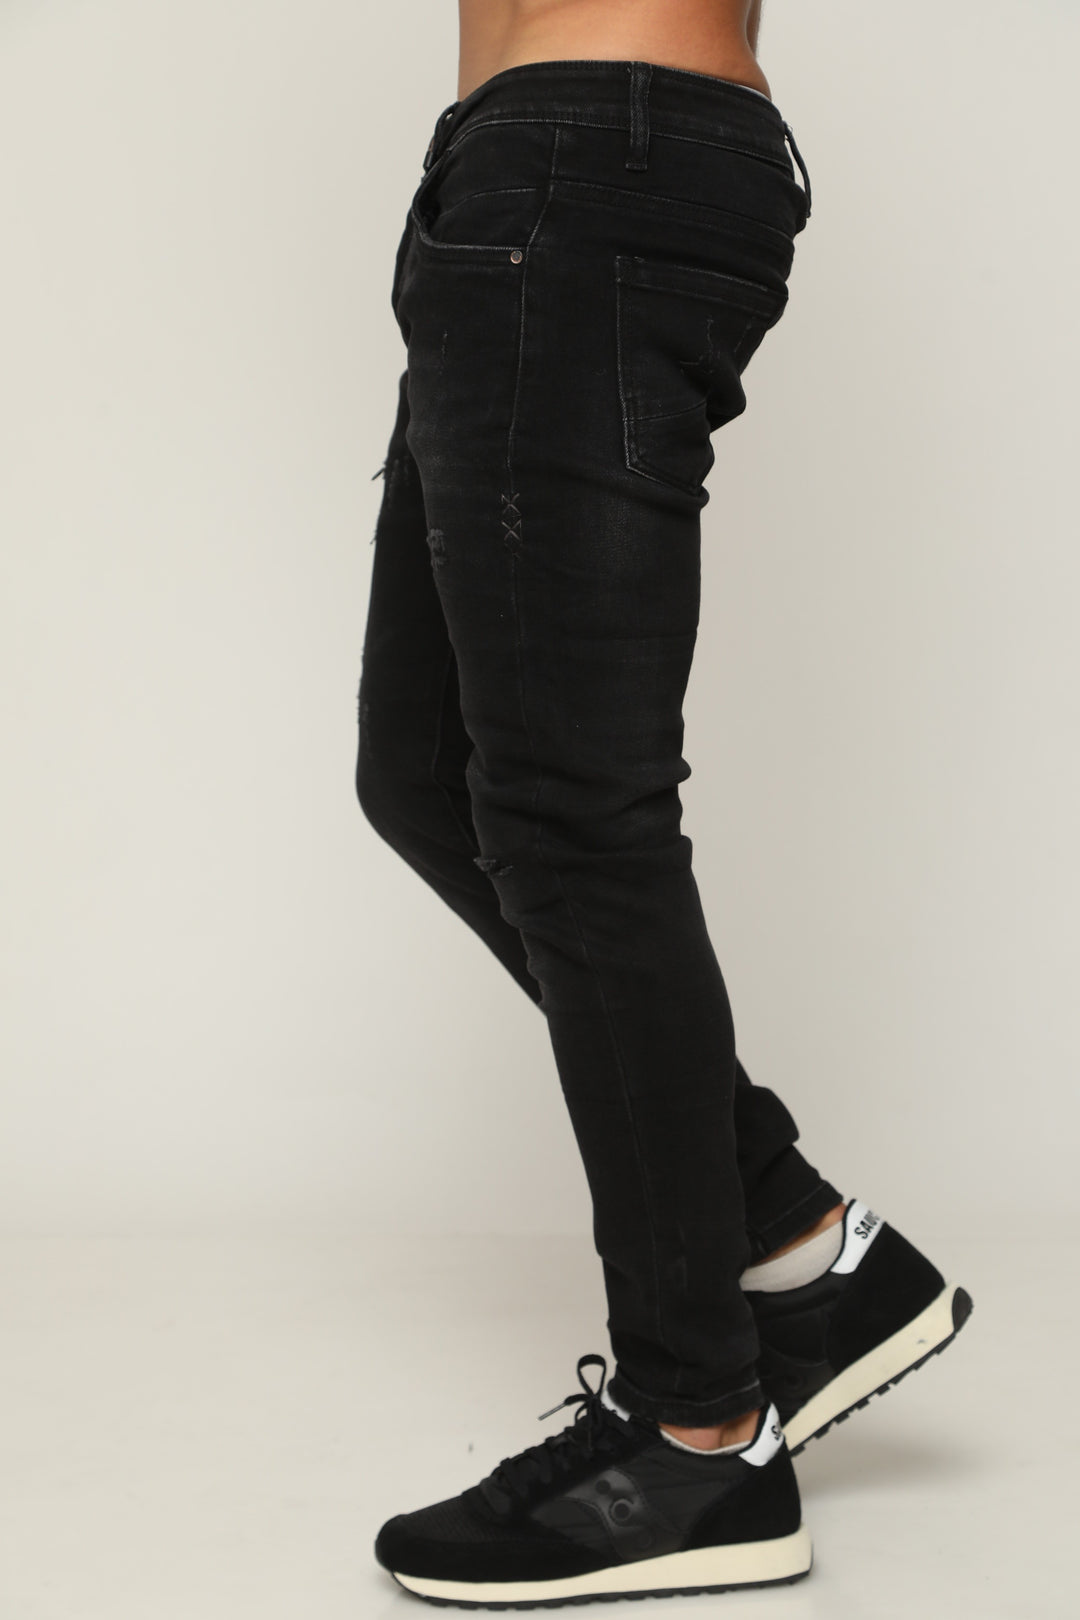 756 ג'ינס סופר סקיני - canavaro jeans